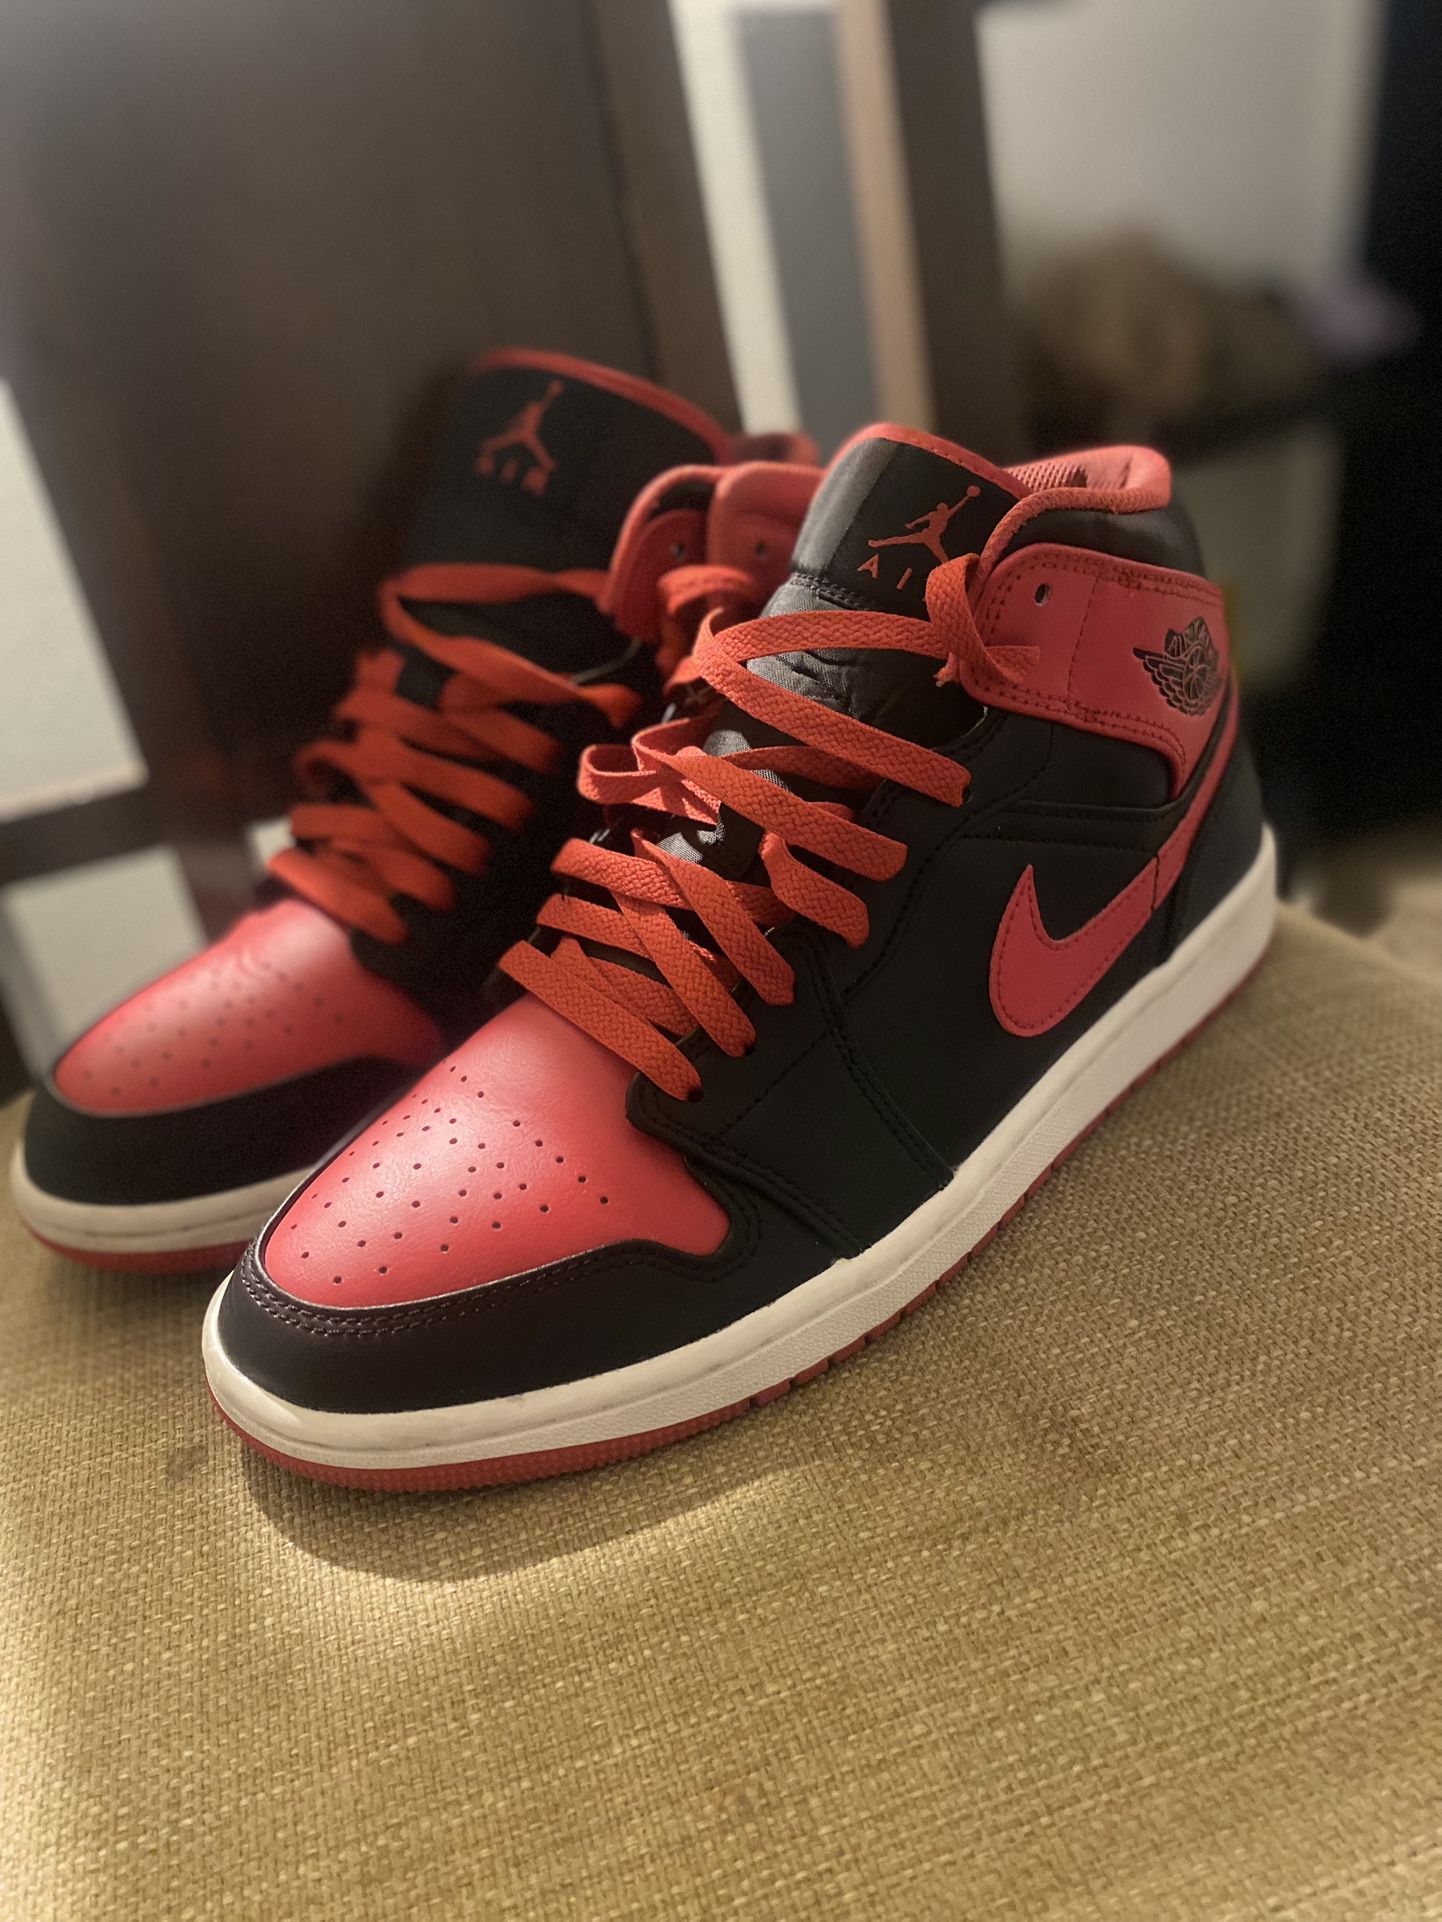 Red And Black Jordan 1